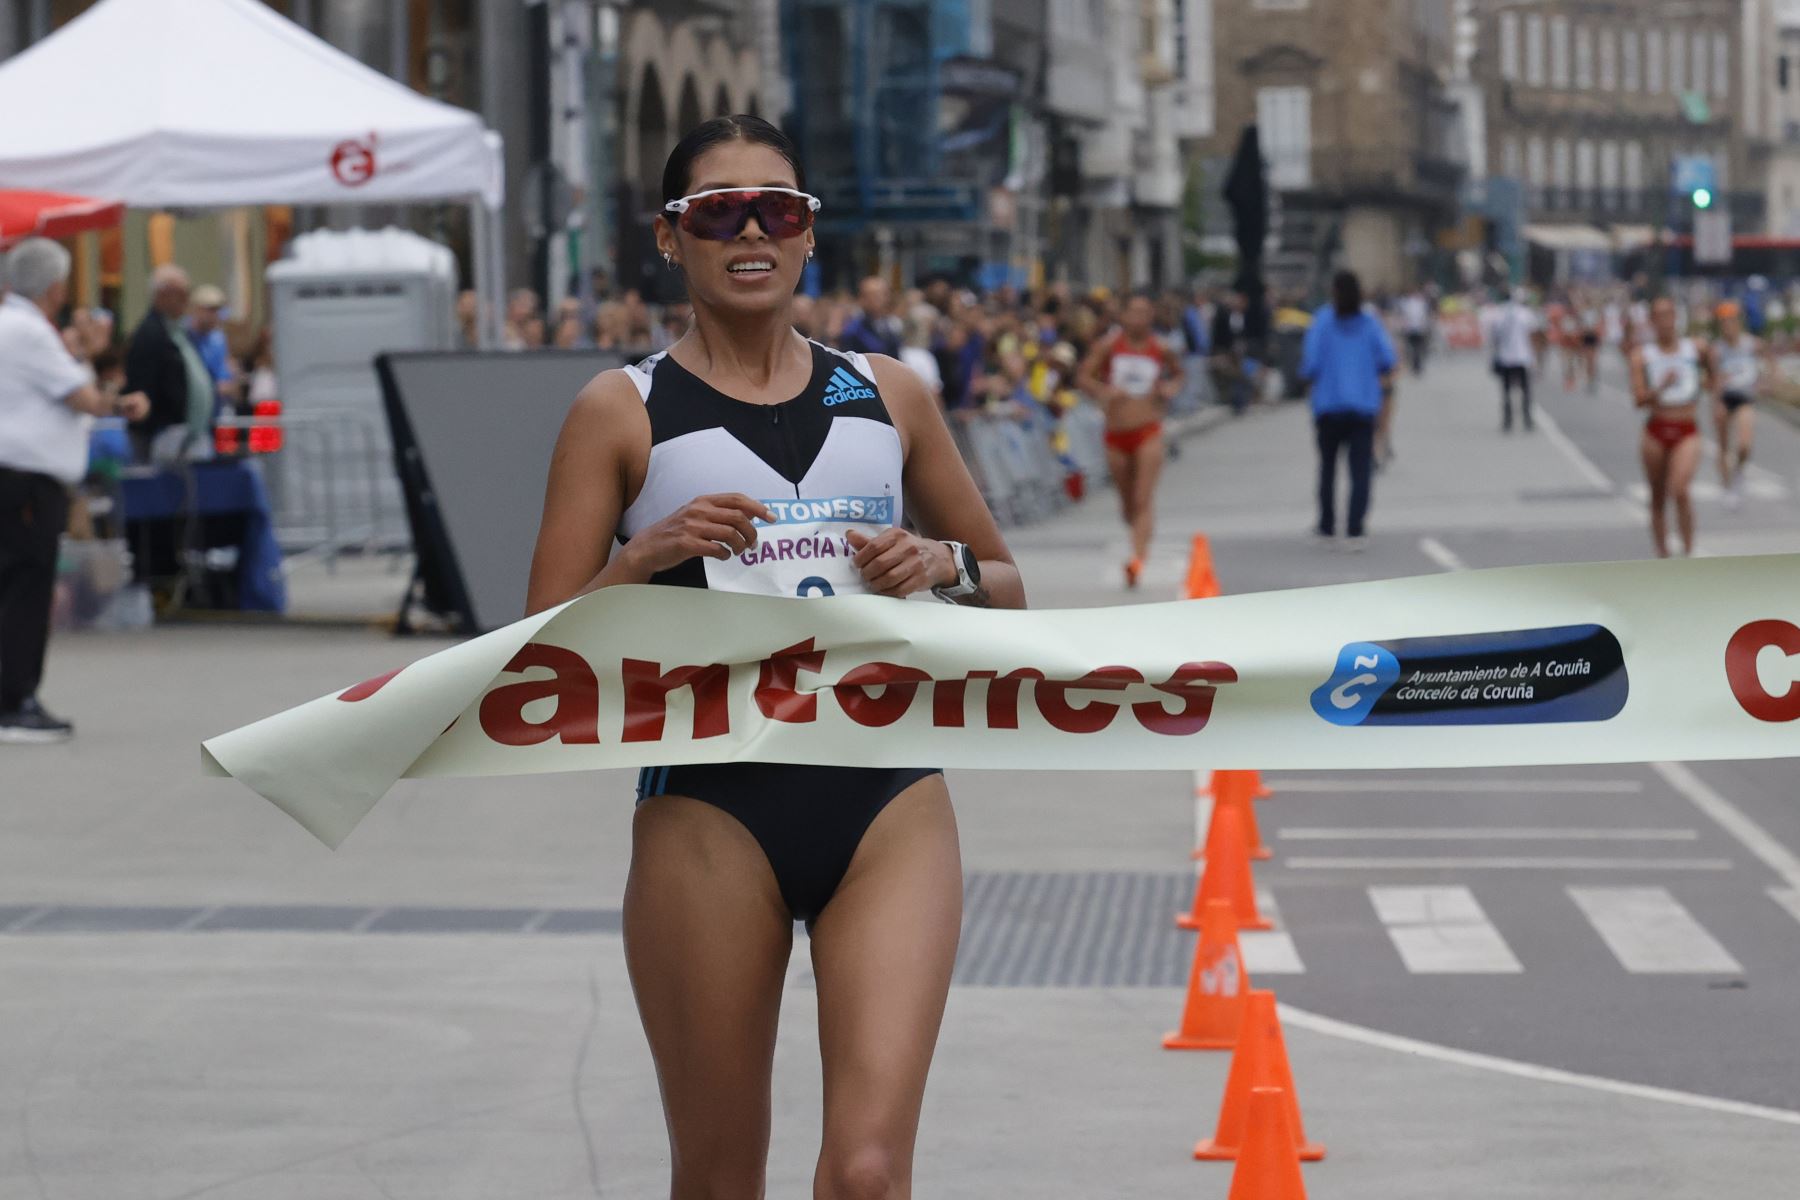 La atleta peruana Kimberly Garcia se impone vencedora de la XXXVI edición del Gran Premio Internacional de Marcha Cantones, que se celebra este sábado en A Coruña con la participación de atletas de talla mundial, donde muchos de ellos pelean por conseguir mínima para las próximas olimpiadas. 
Foto: EFE